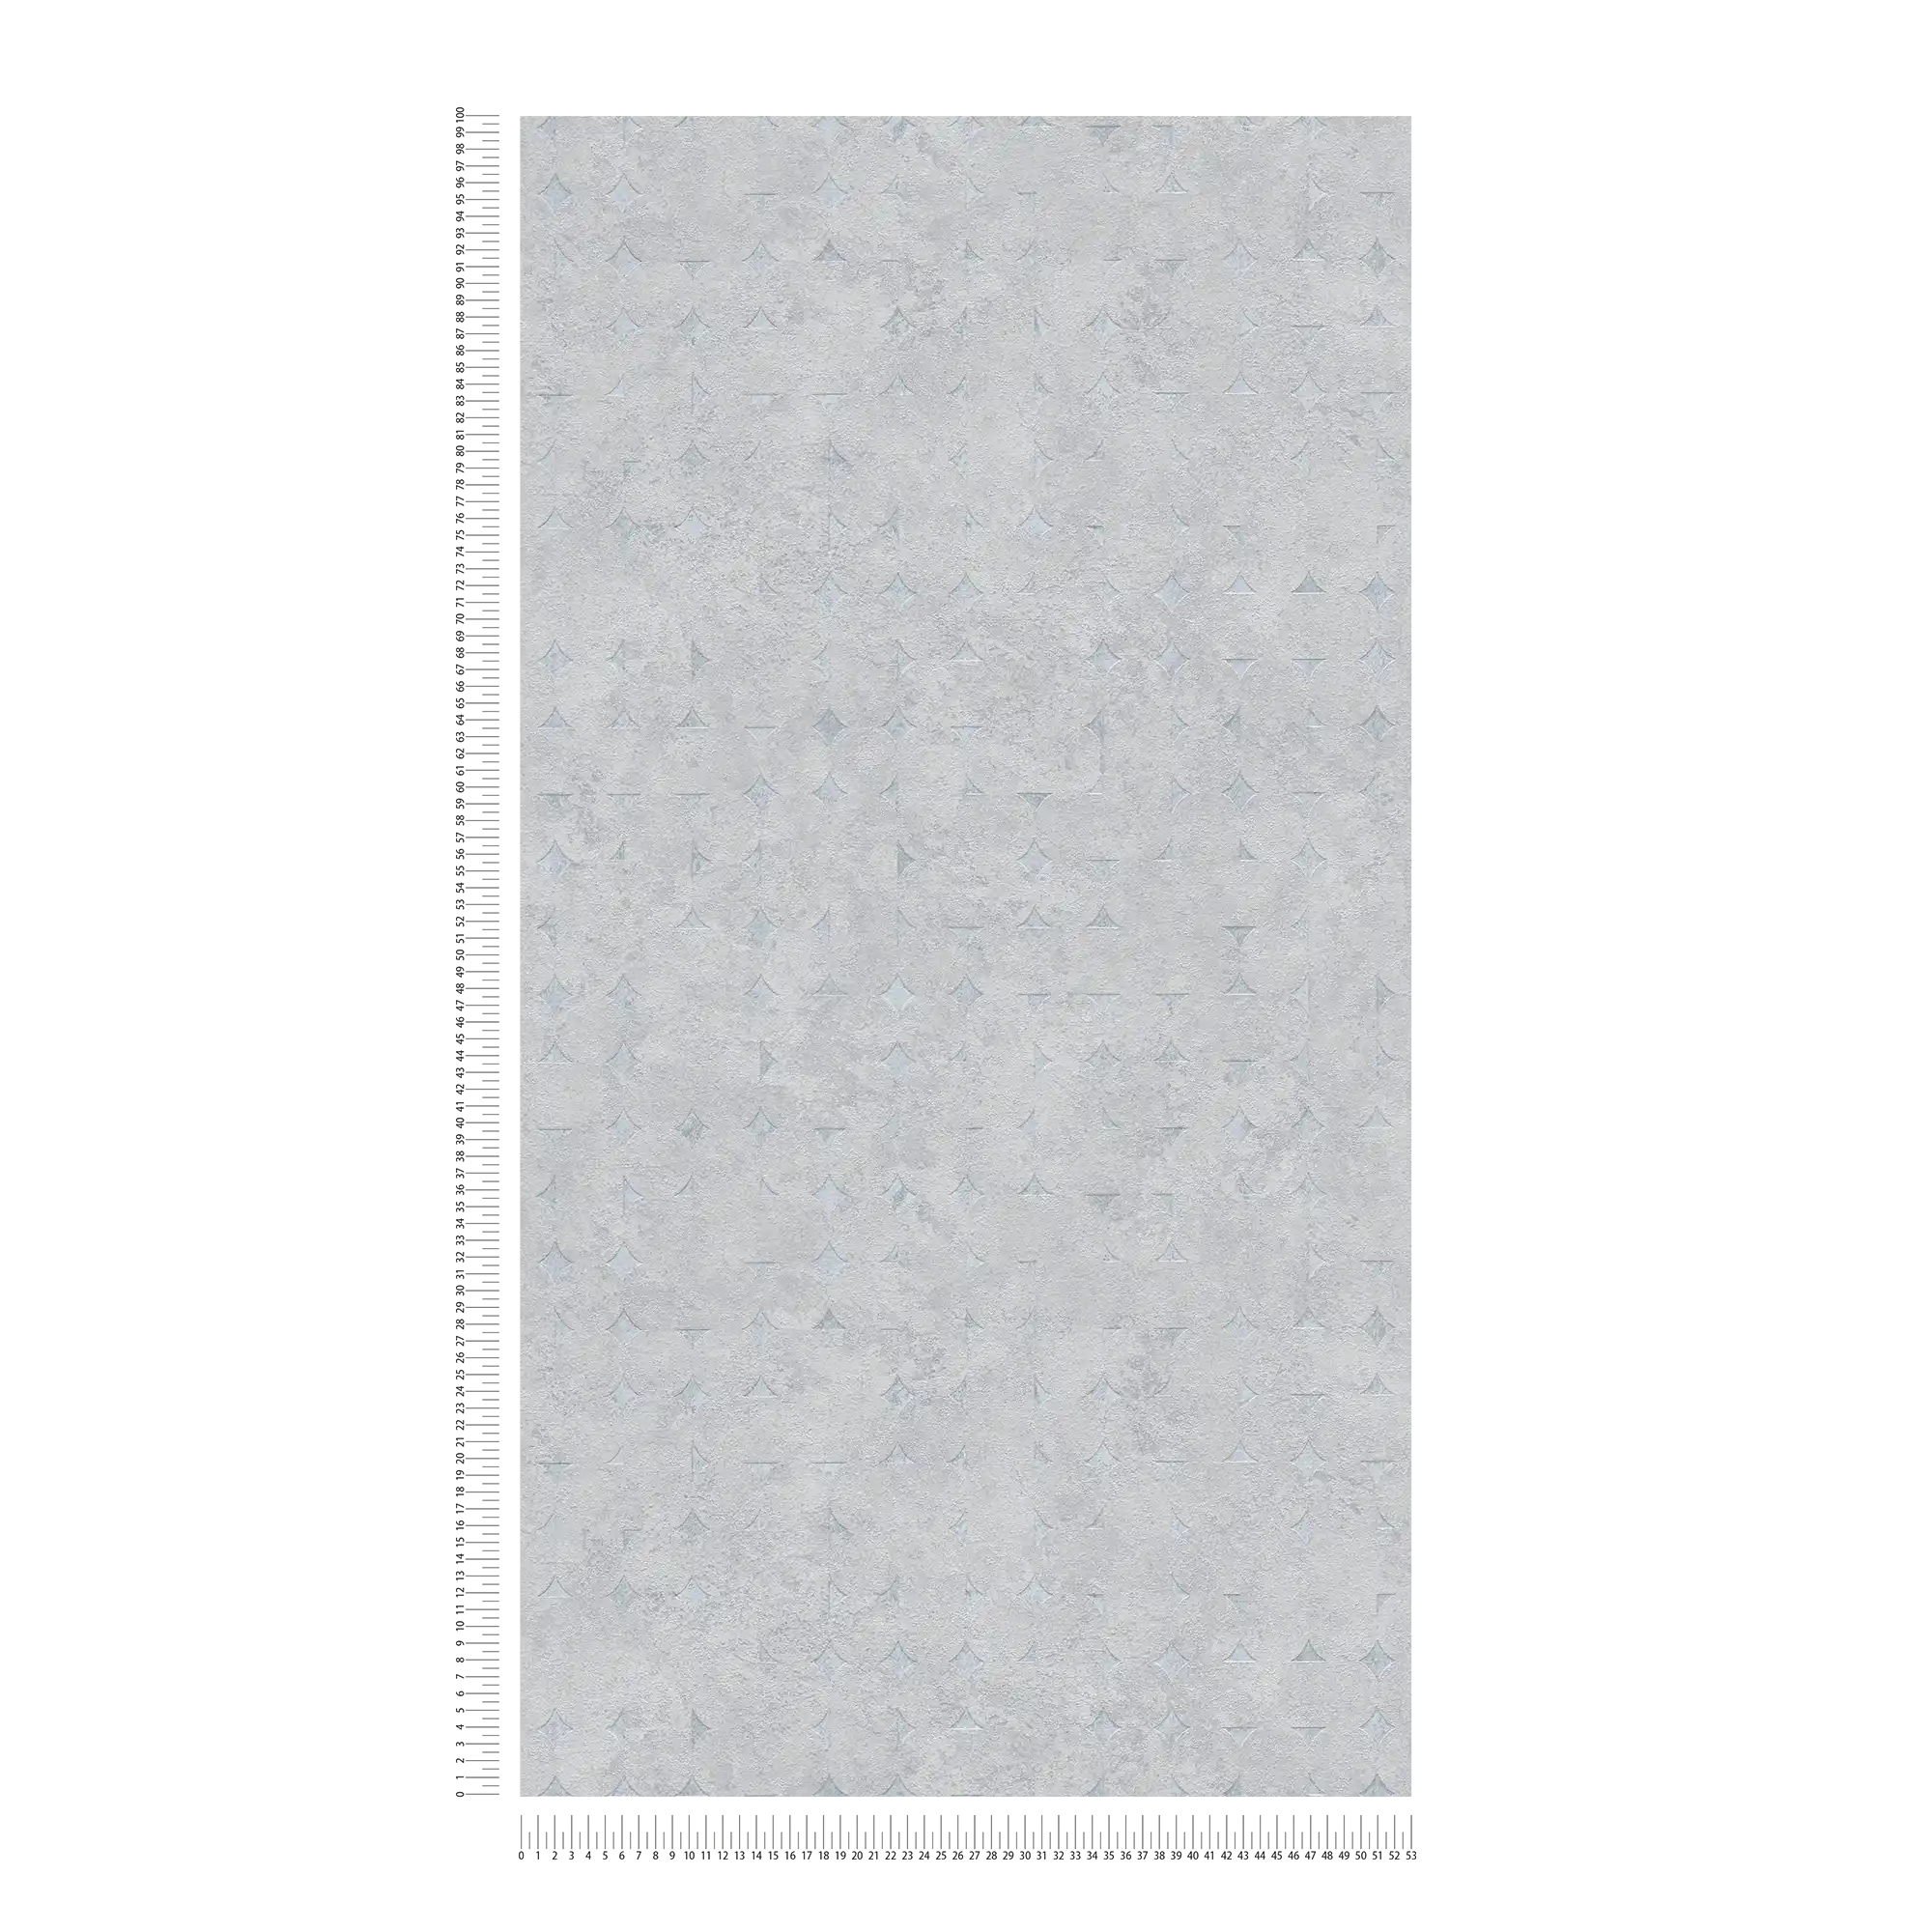             papier peint en papier intissé avec formes géométriques et accents brillants - gris clair, argenté
        